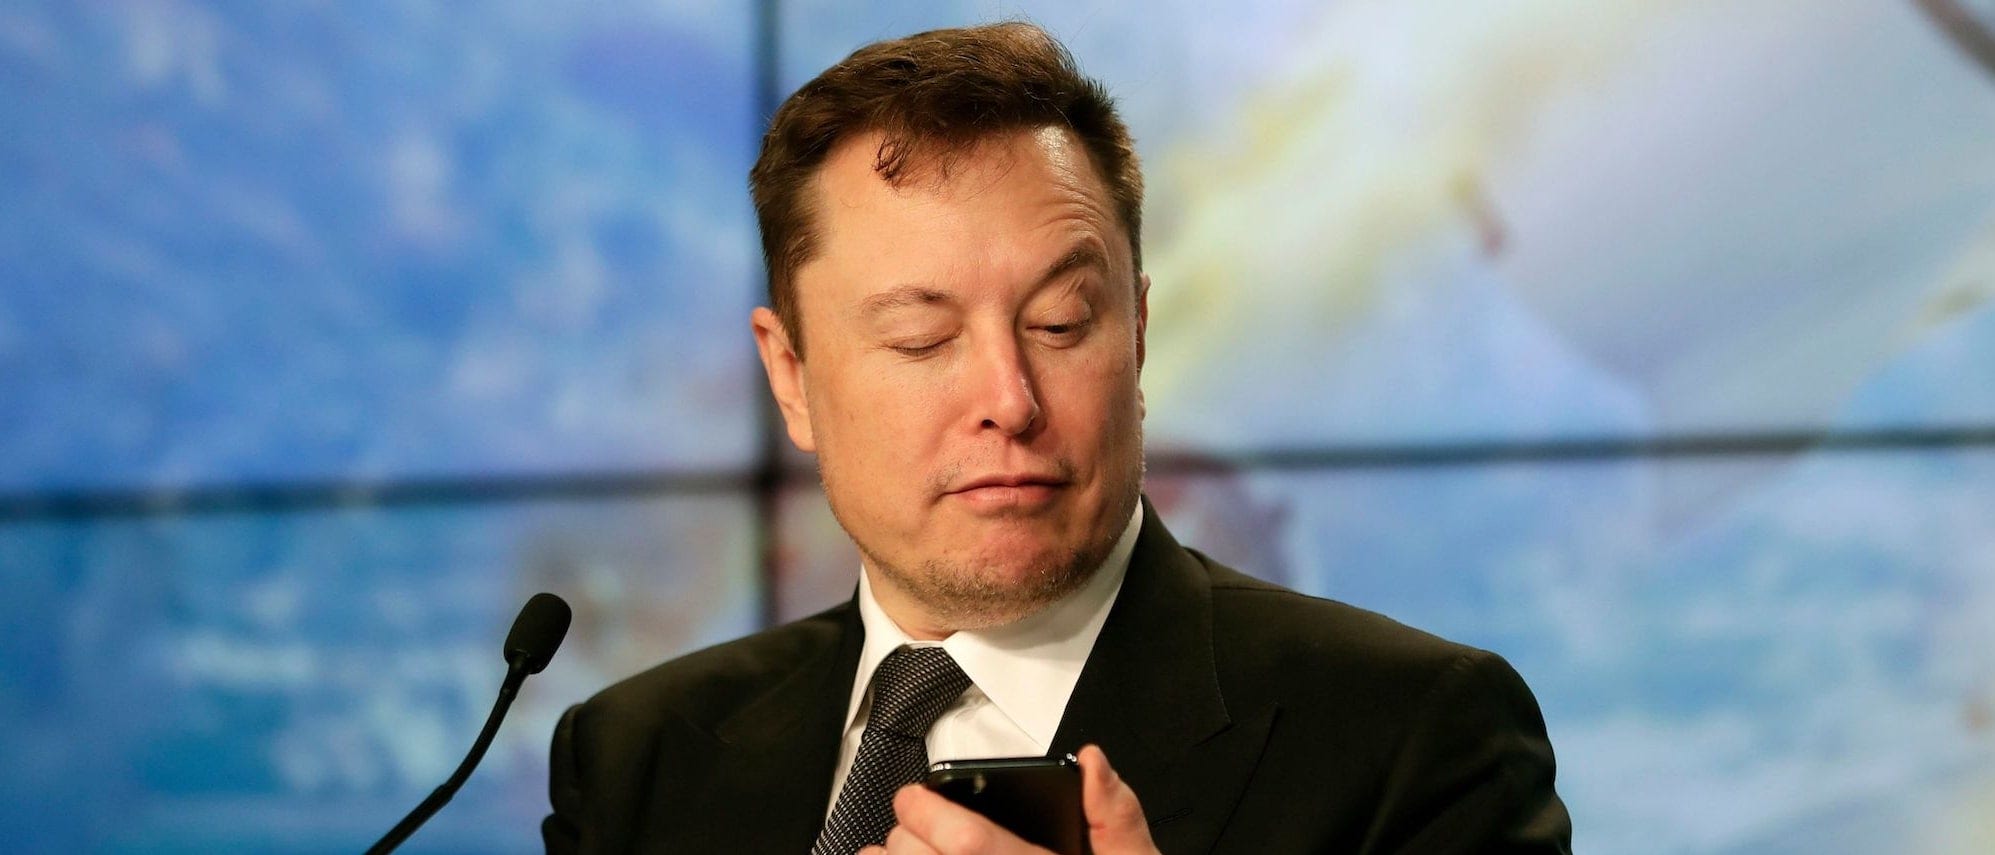 Elon Musk ha condiviso un meme contro YouTube: "non fanno nulla per le truffe, ma se dici una parolaccia..."